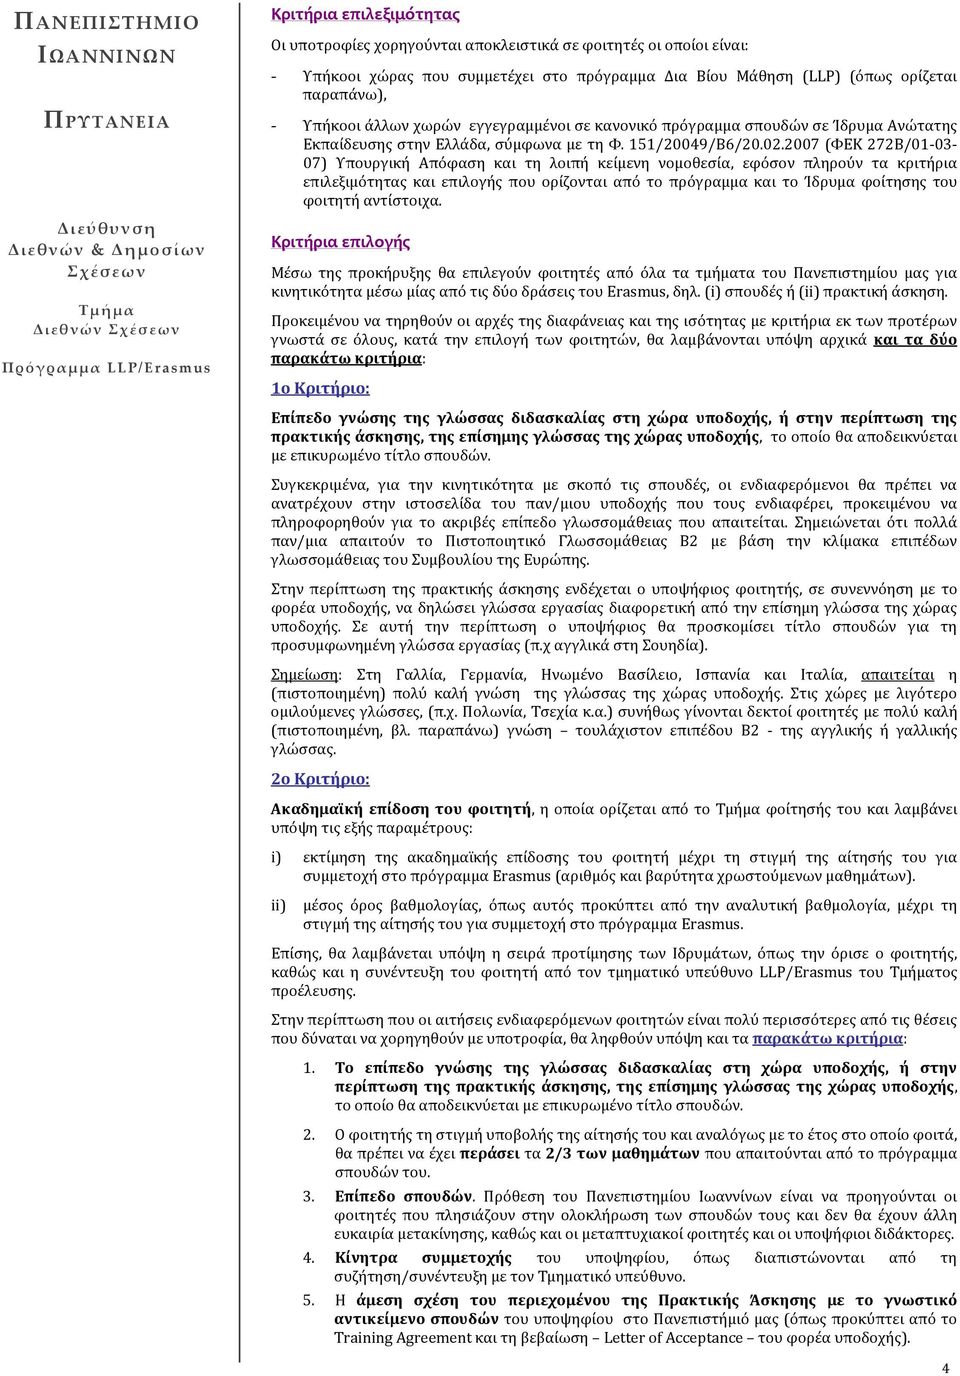 2007 (ΦΕΚ 272Β/01-03- 07) Υπουργική Απόφαση και τη λοιπή κείμενη νομοθεσία, εφόσον πληρούν τα κριτήρια επιλεξιμότητας και επιλογής που ορίζονται από το πρόγραμμα και το Ίδρυμα φοίτησης του φοιτητή